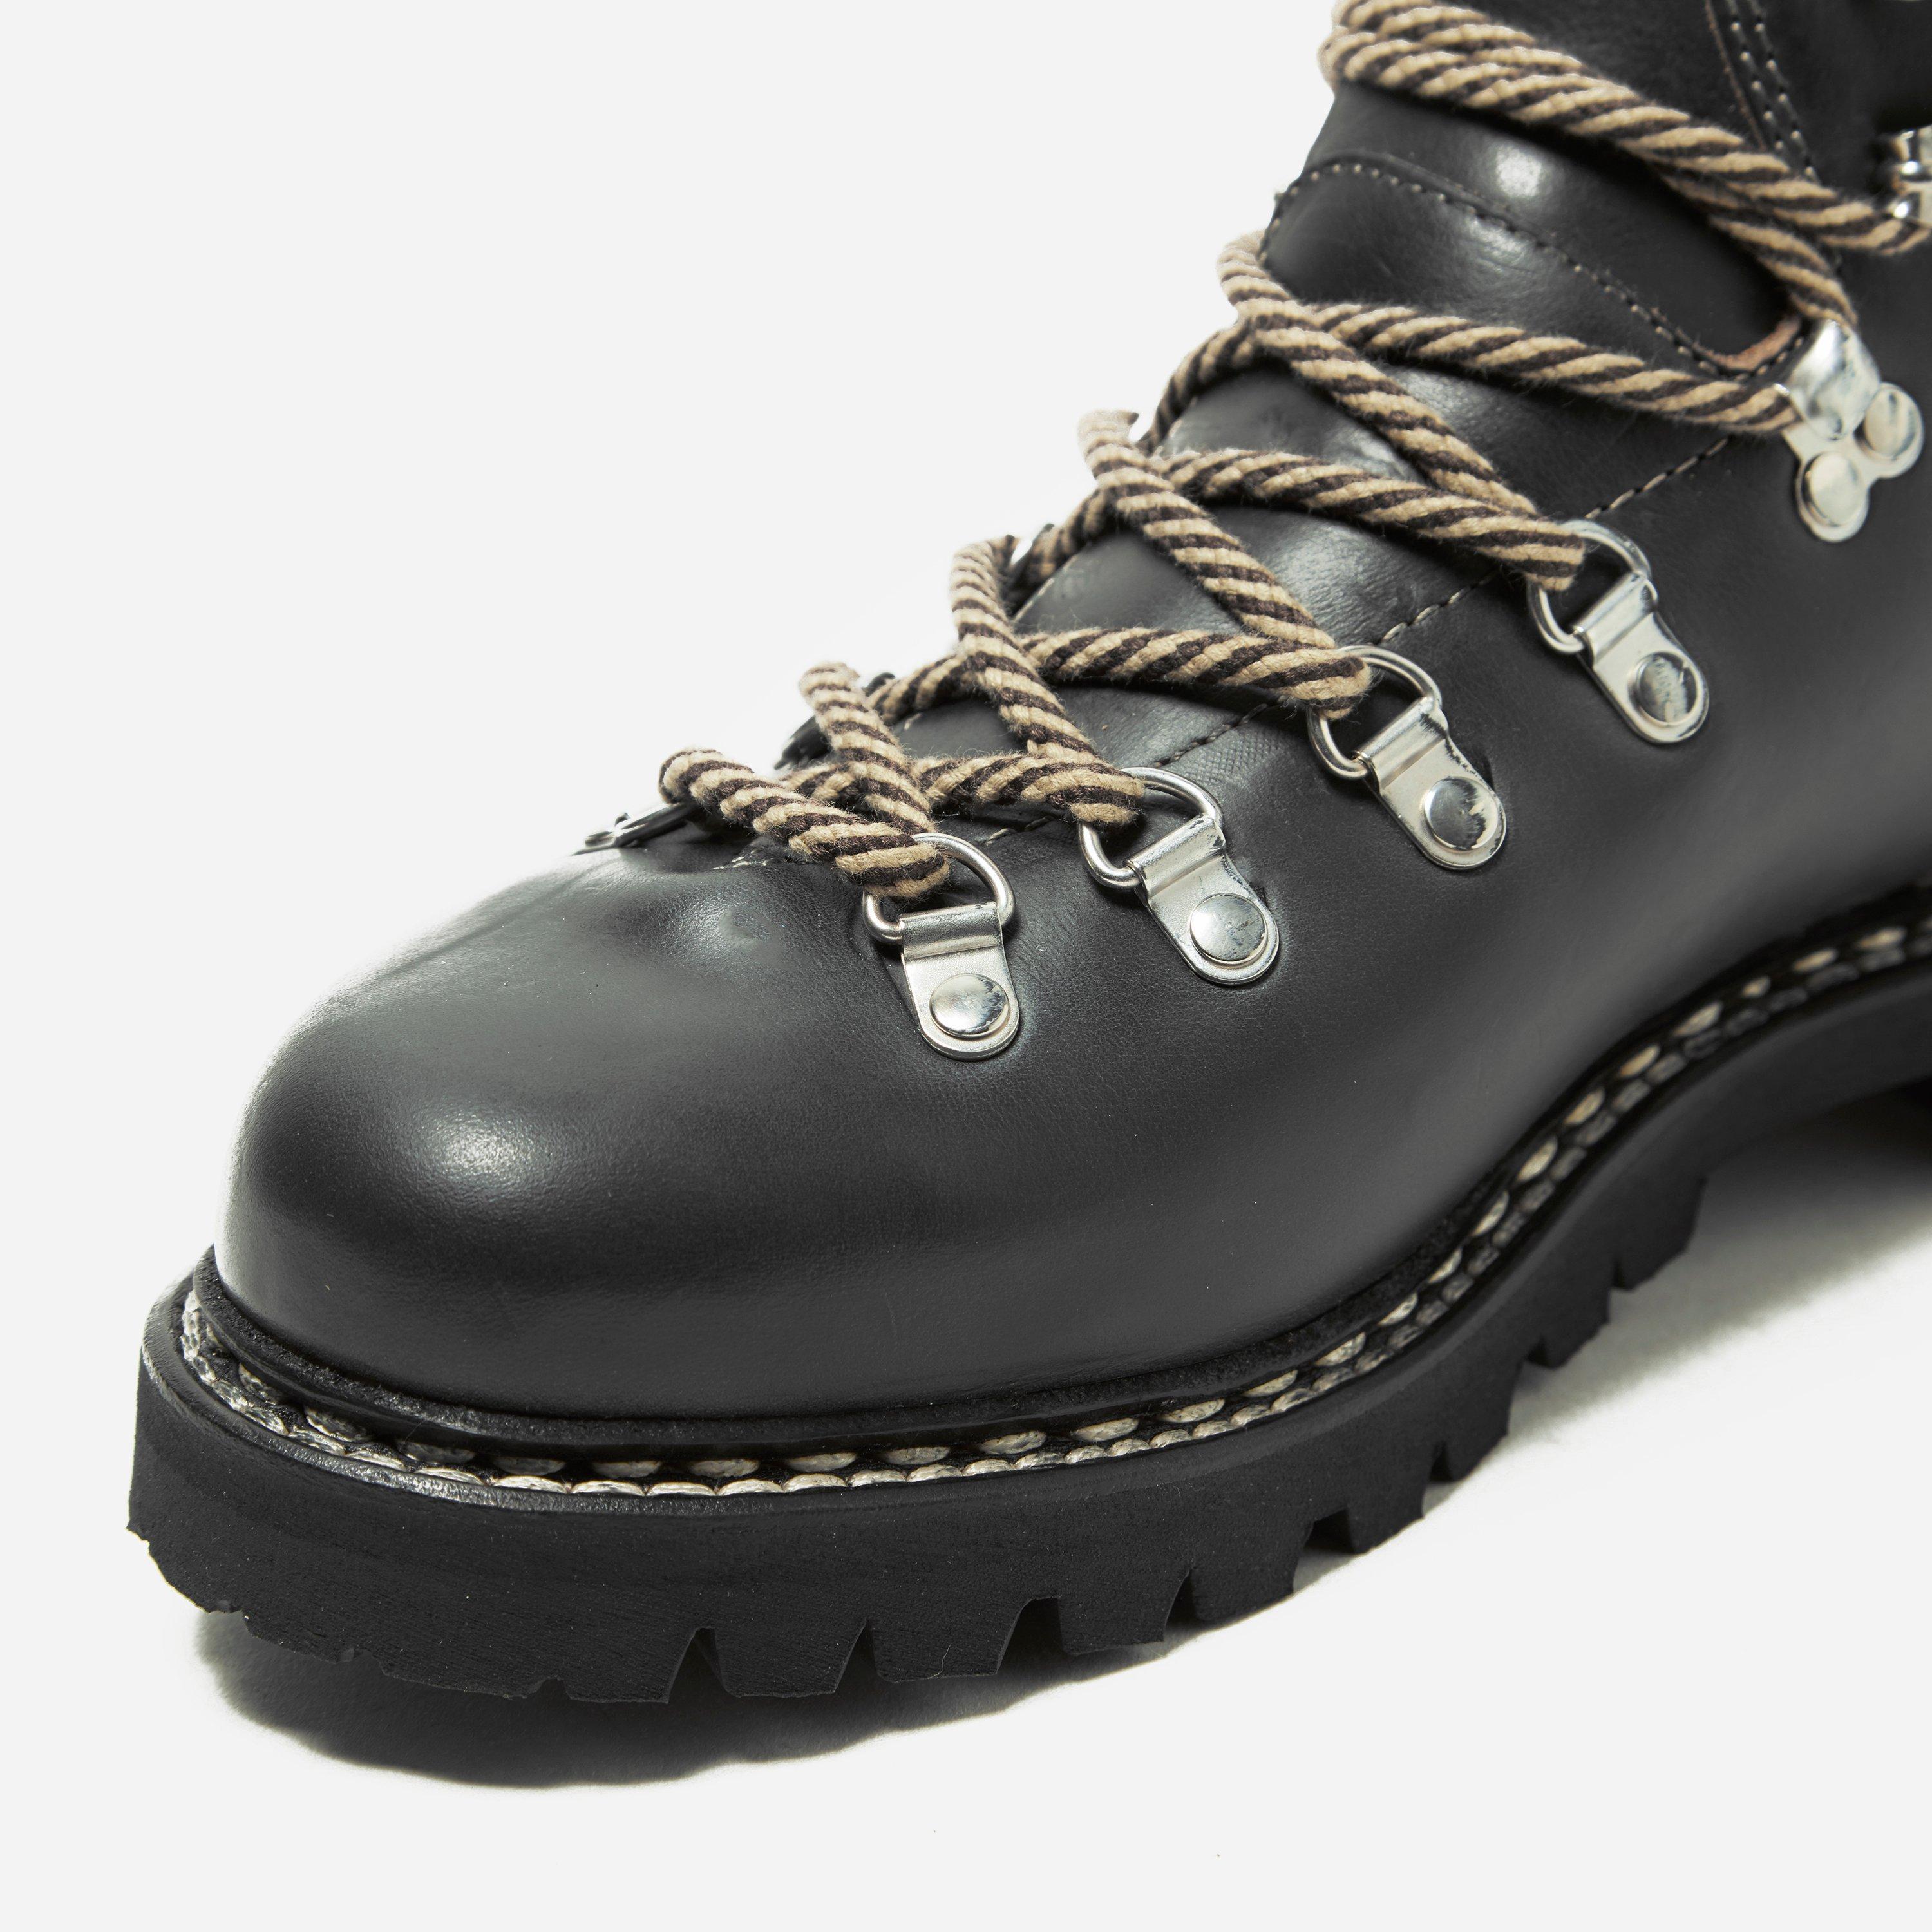 Paraboot Rubber Avoriaz Hiking Boot in Black for Men - Lyst